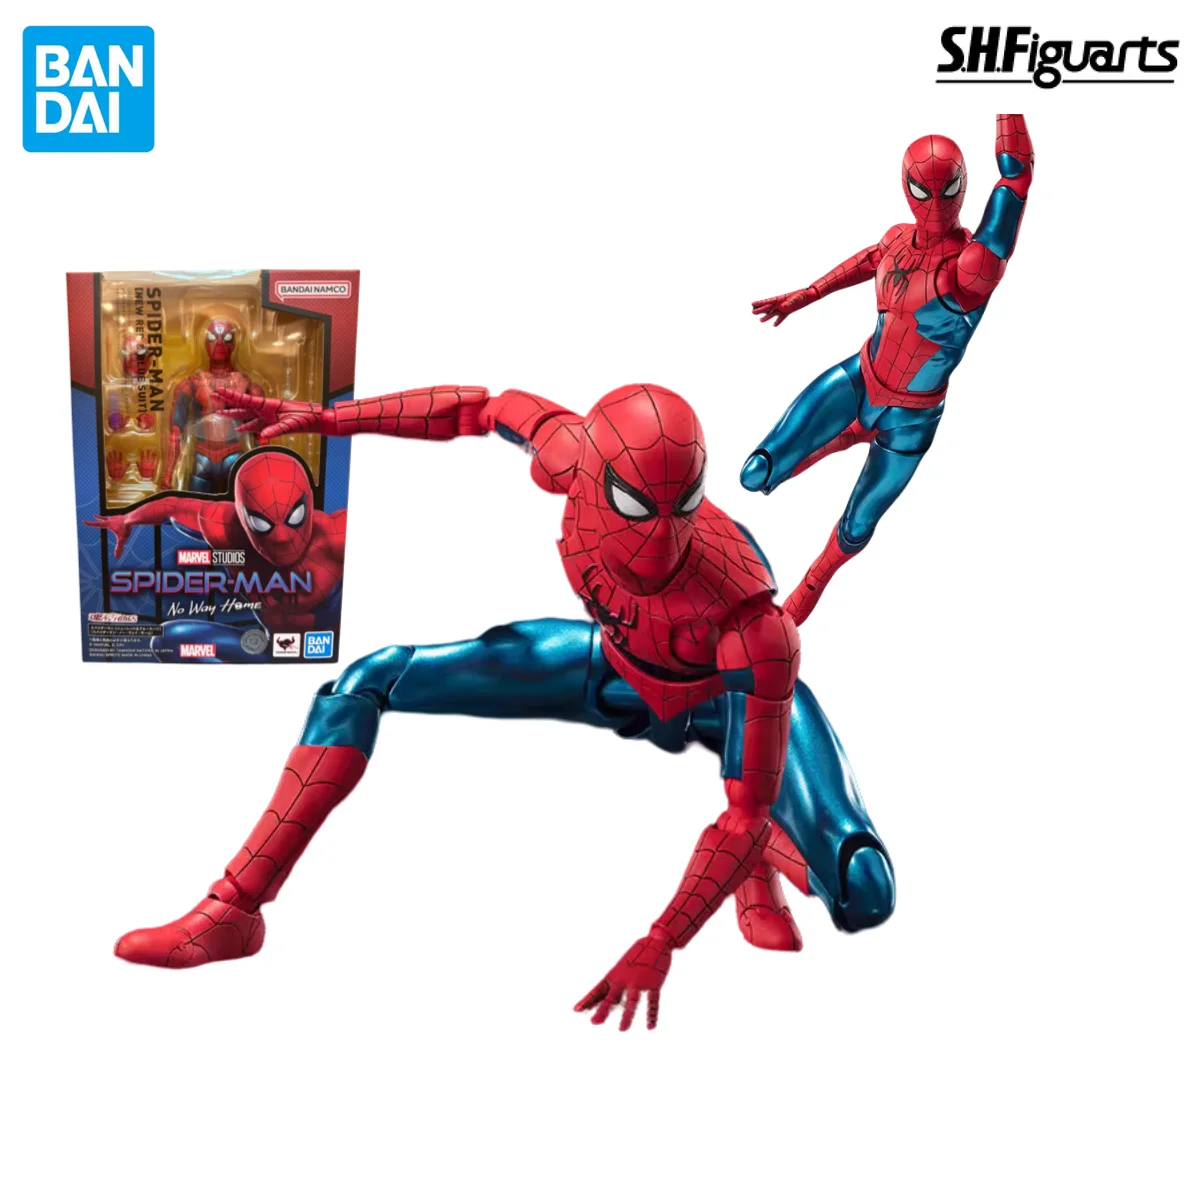 

Фигурка BANDAI S.H. Фигуртс, оригинальный Человек-паук Marvel: нет дороги, Питер Паркер, новый красный и синий костюм, экшн-фигурка, подарок на день рождения